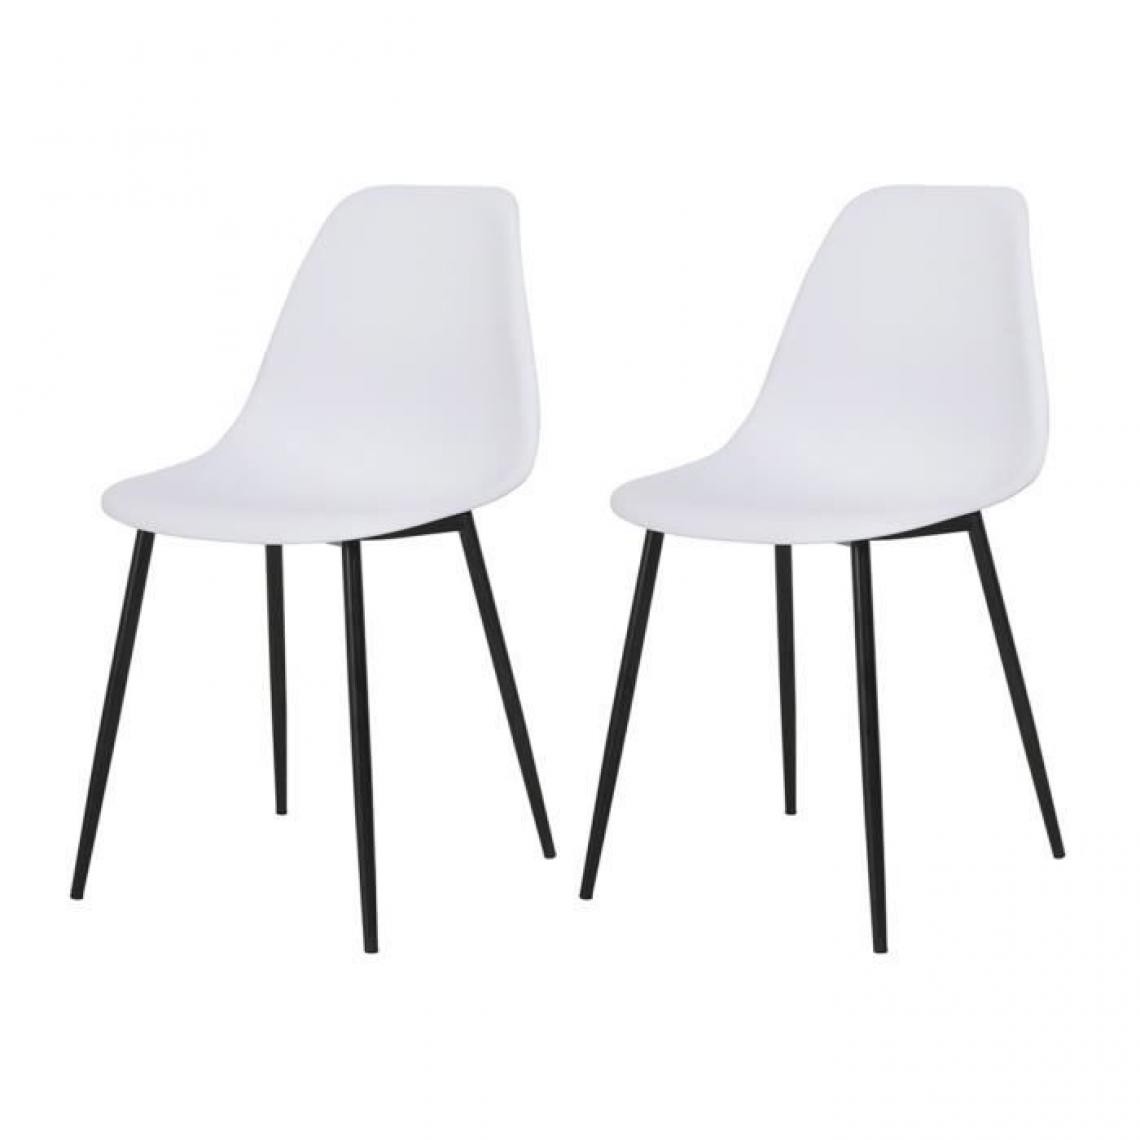 Cstore - Lot de 2 chaises blanc - L 46 x P 52 x H 84 cm - CLODY - Chaises